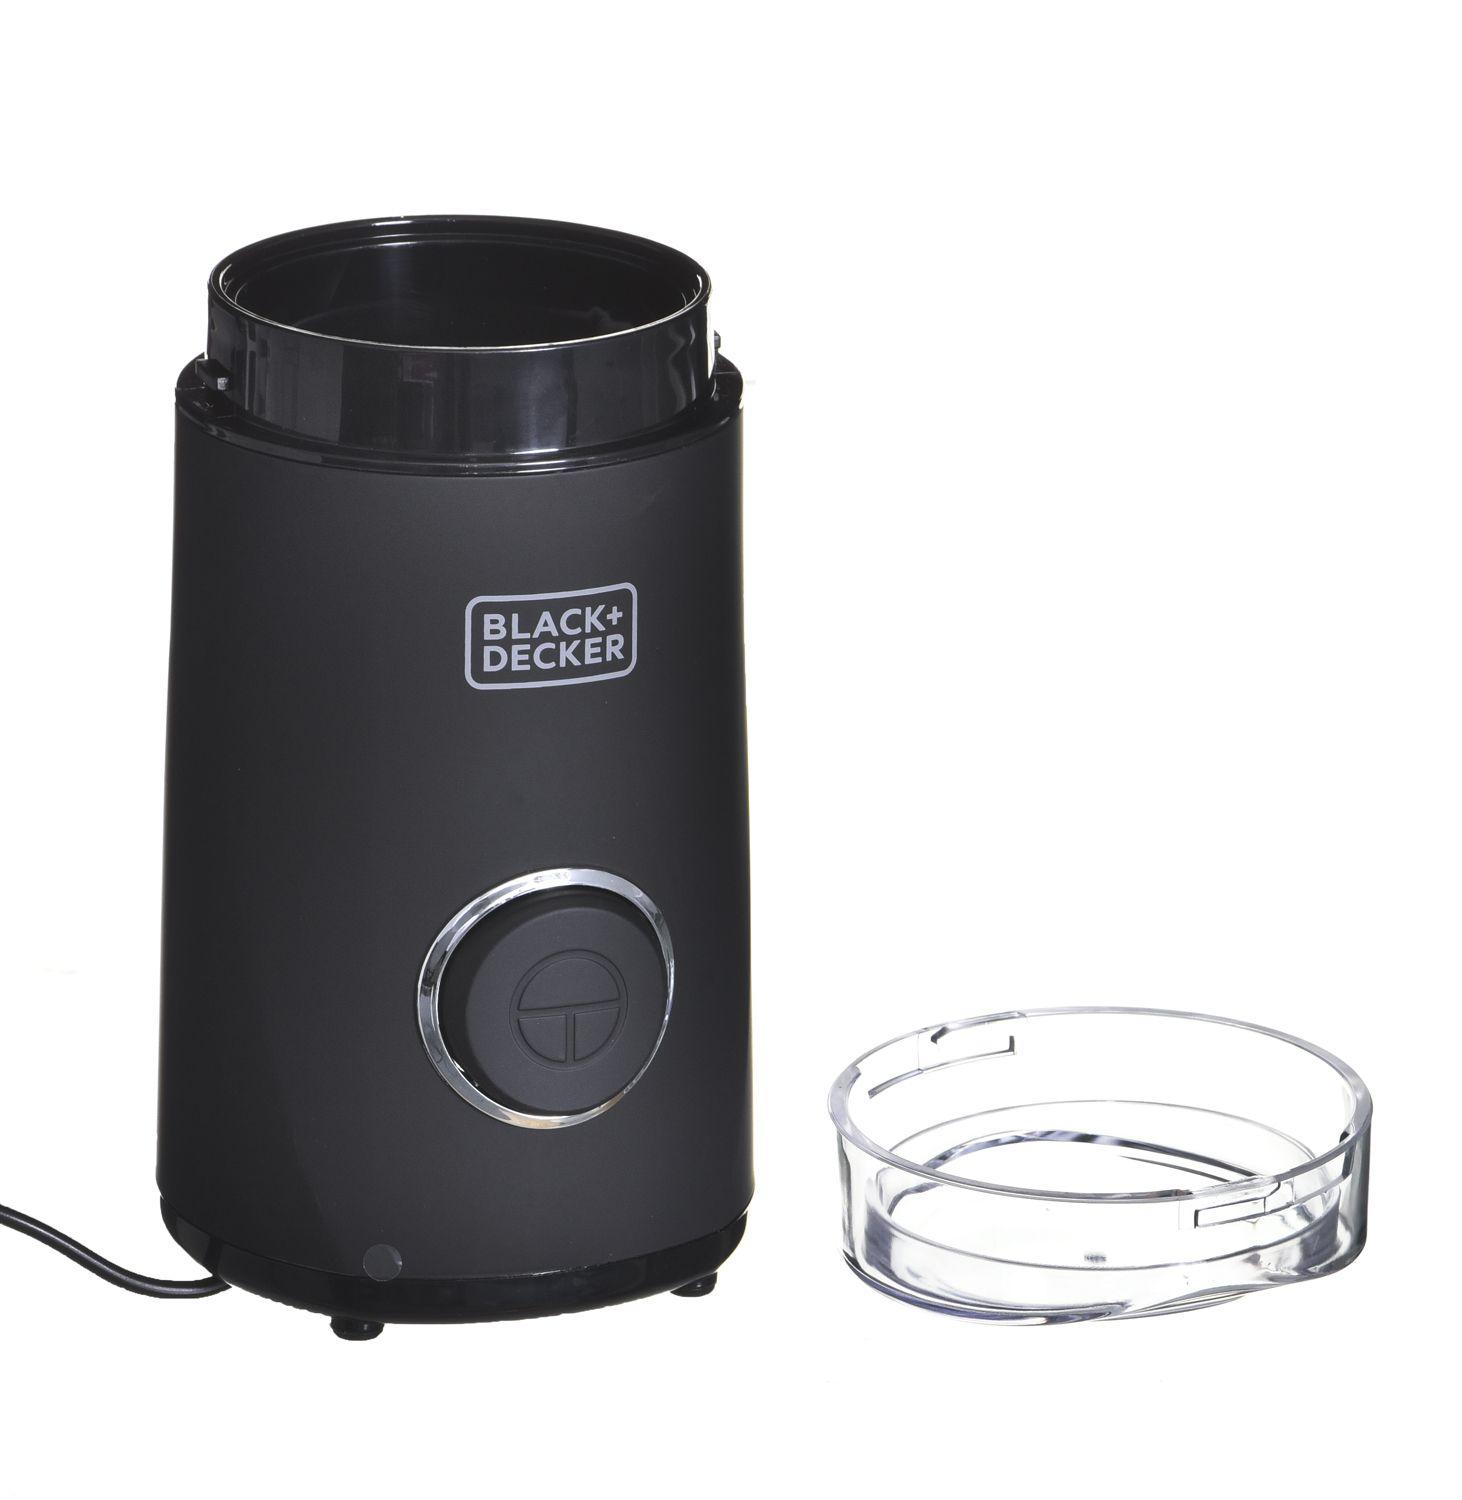 Młynek elektryczny do kawy BLACK+DECKER BXCG150E ES9080010B (150W; udarowy; kolor czarny)